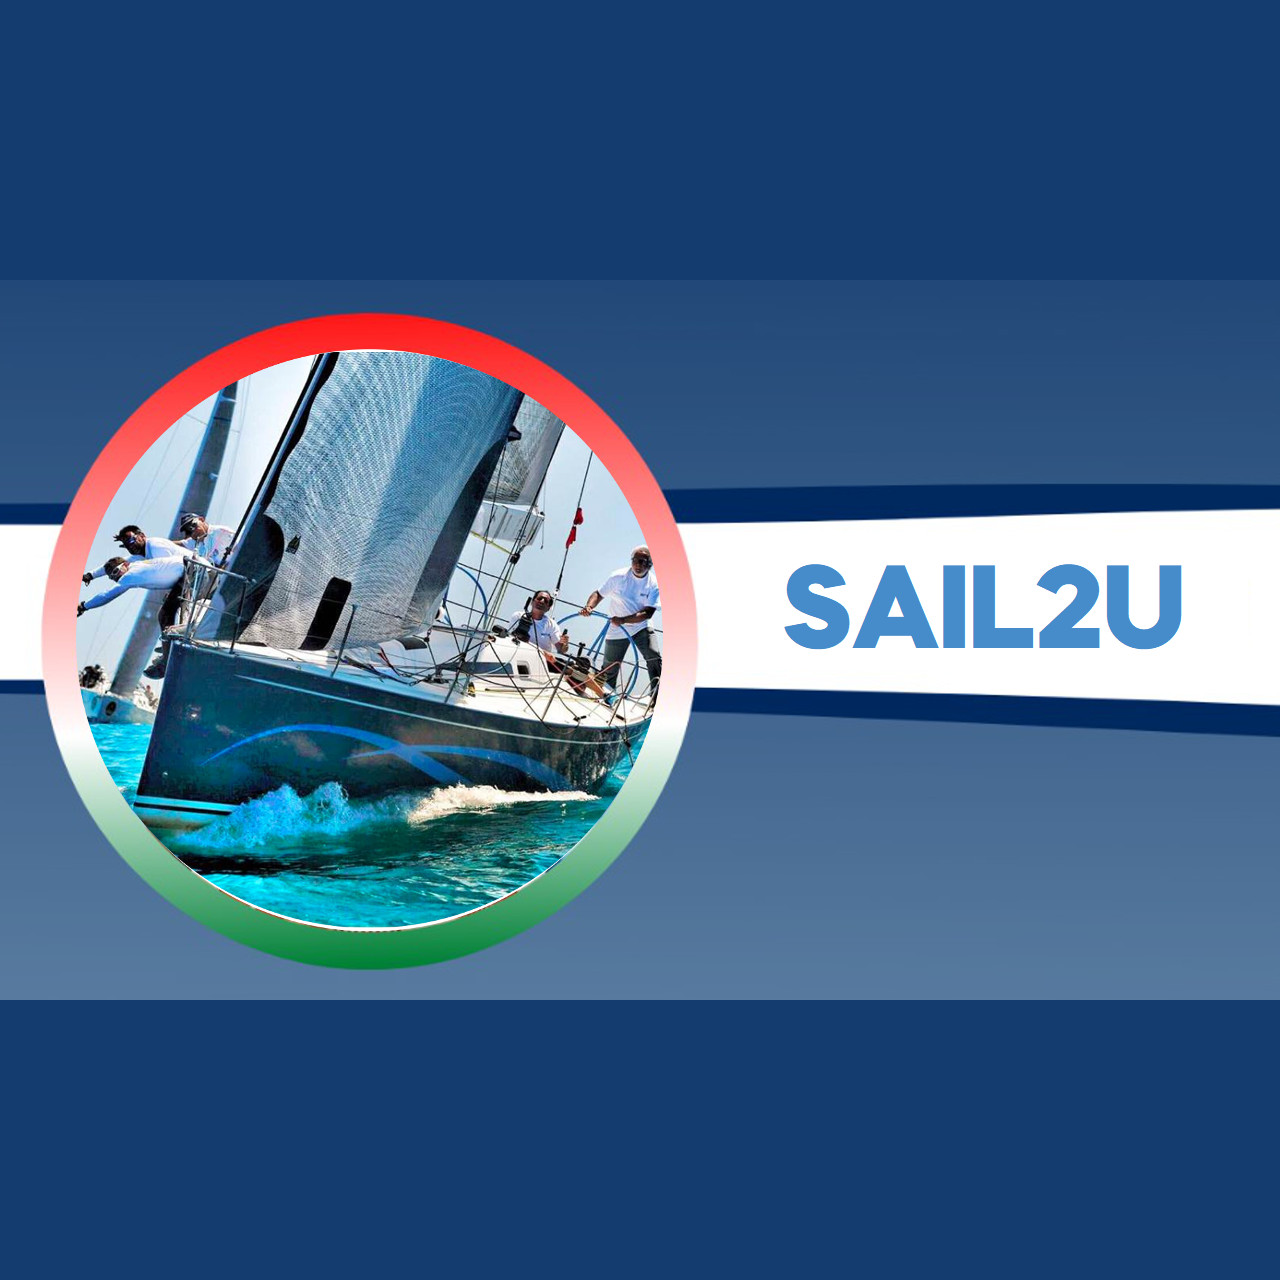 Sail2u con Giancarlo Pedote: Skipper dell’IMOCA Prysmian Group